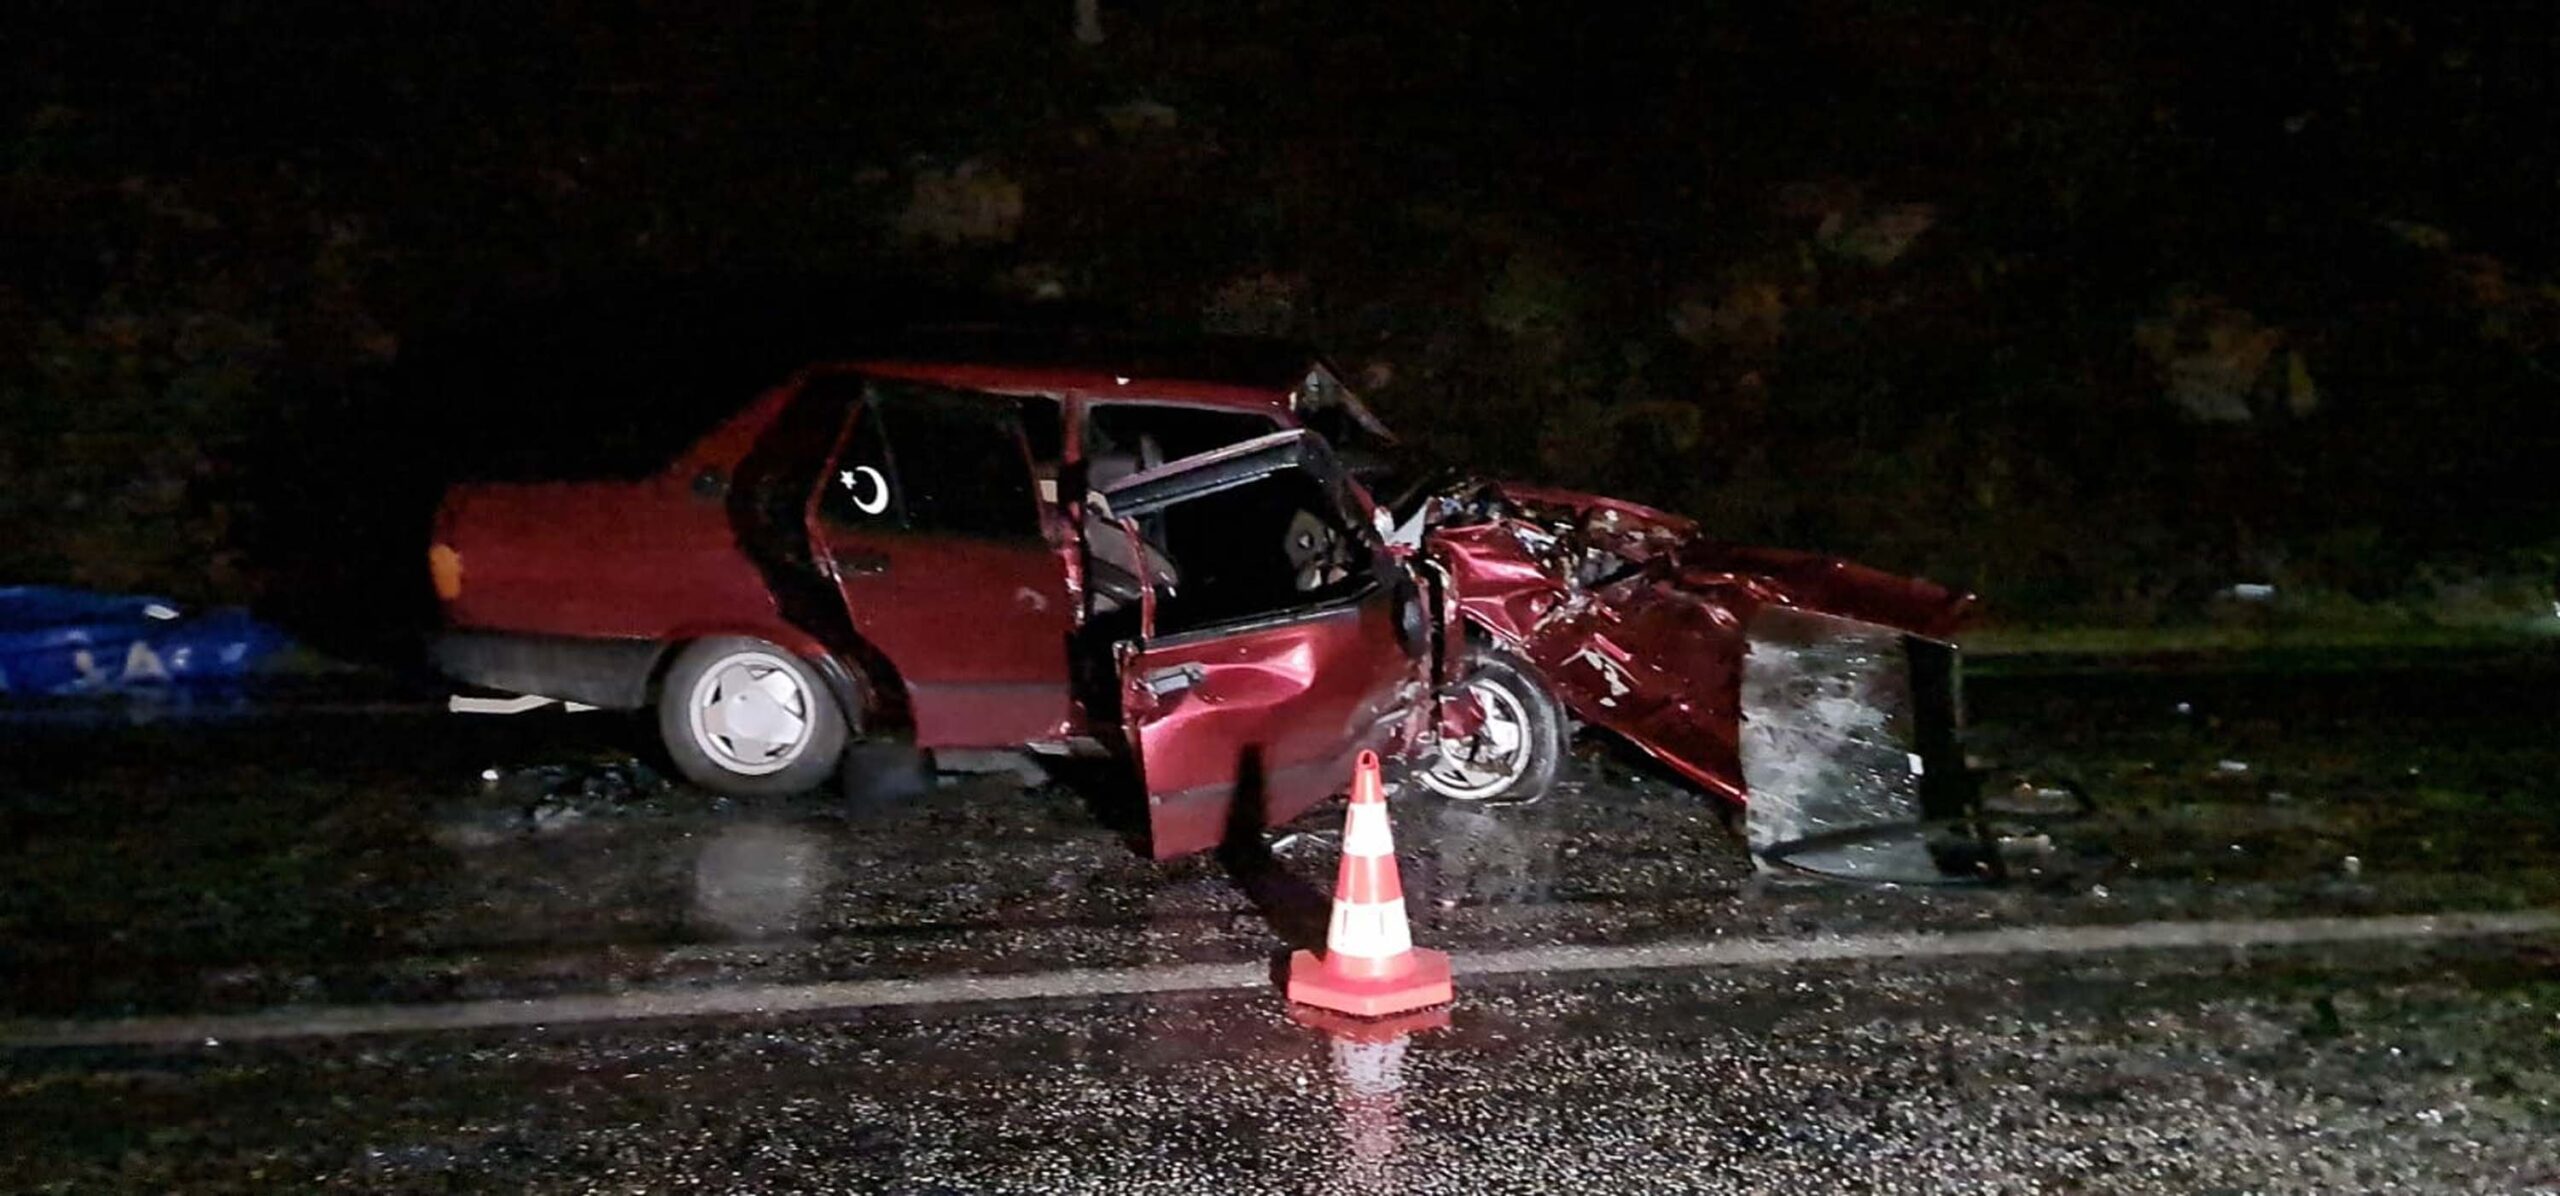 İzmir’de meydana gelen trafik kazasında, otomobiller çarpıştı ve maalesef bir belediye personeli hayatını kaybetti. Sürücü ise ağır yaralı olarak hastaneye kaldırıldı.